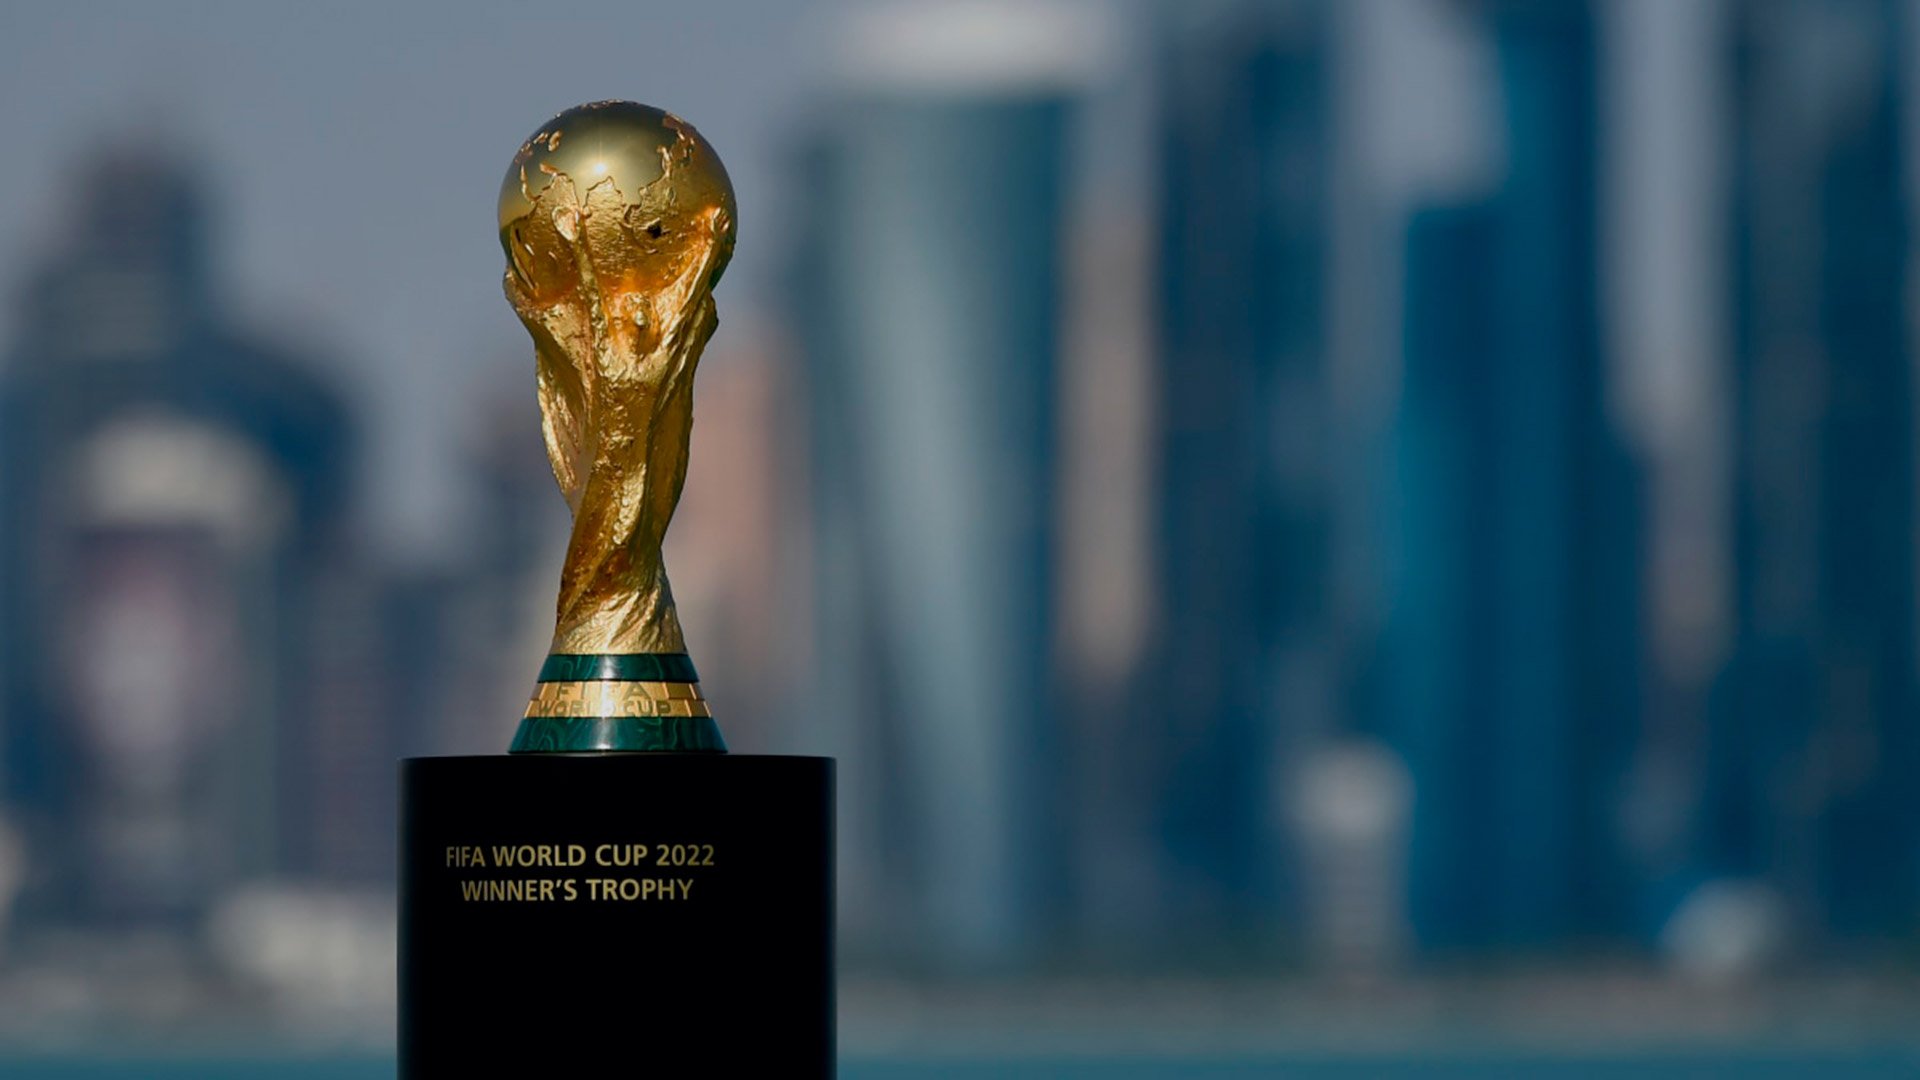 Mundial Qatar 2022: vuelve la venta las entradas para los partidos desde hoy hasta el 16 de agosto